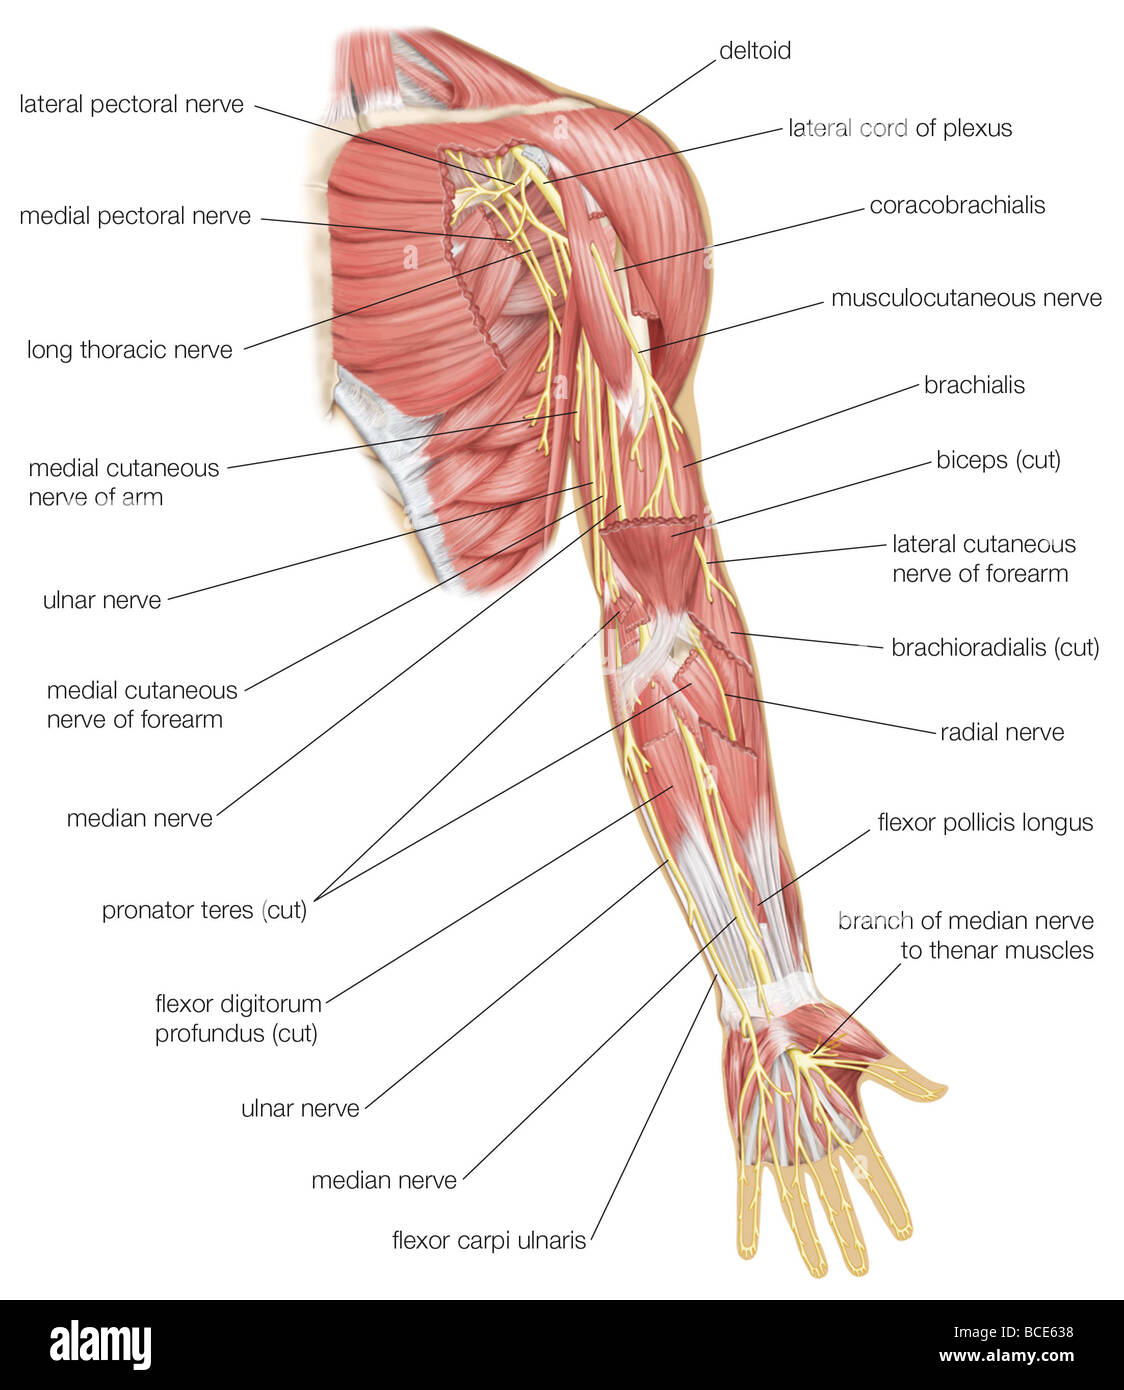 Vista anteriore del braccio sinistro che mostra mediano, ulnare, e nervi radiali e altri rami del plesso brachiale. Foto Stock